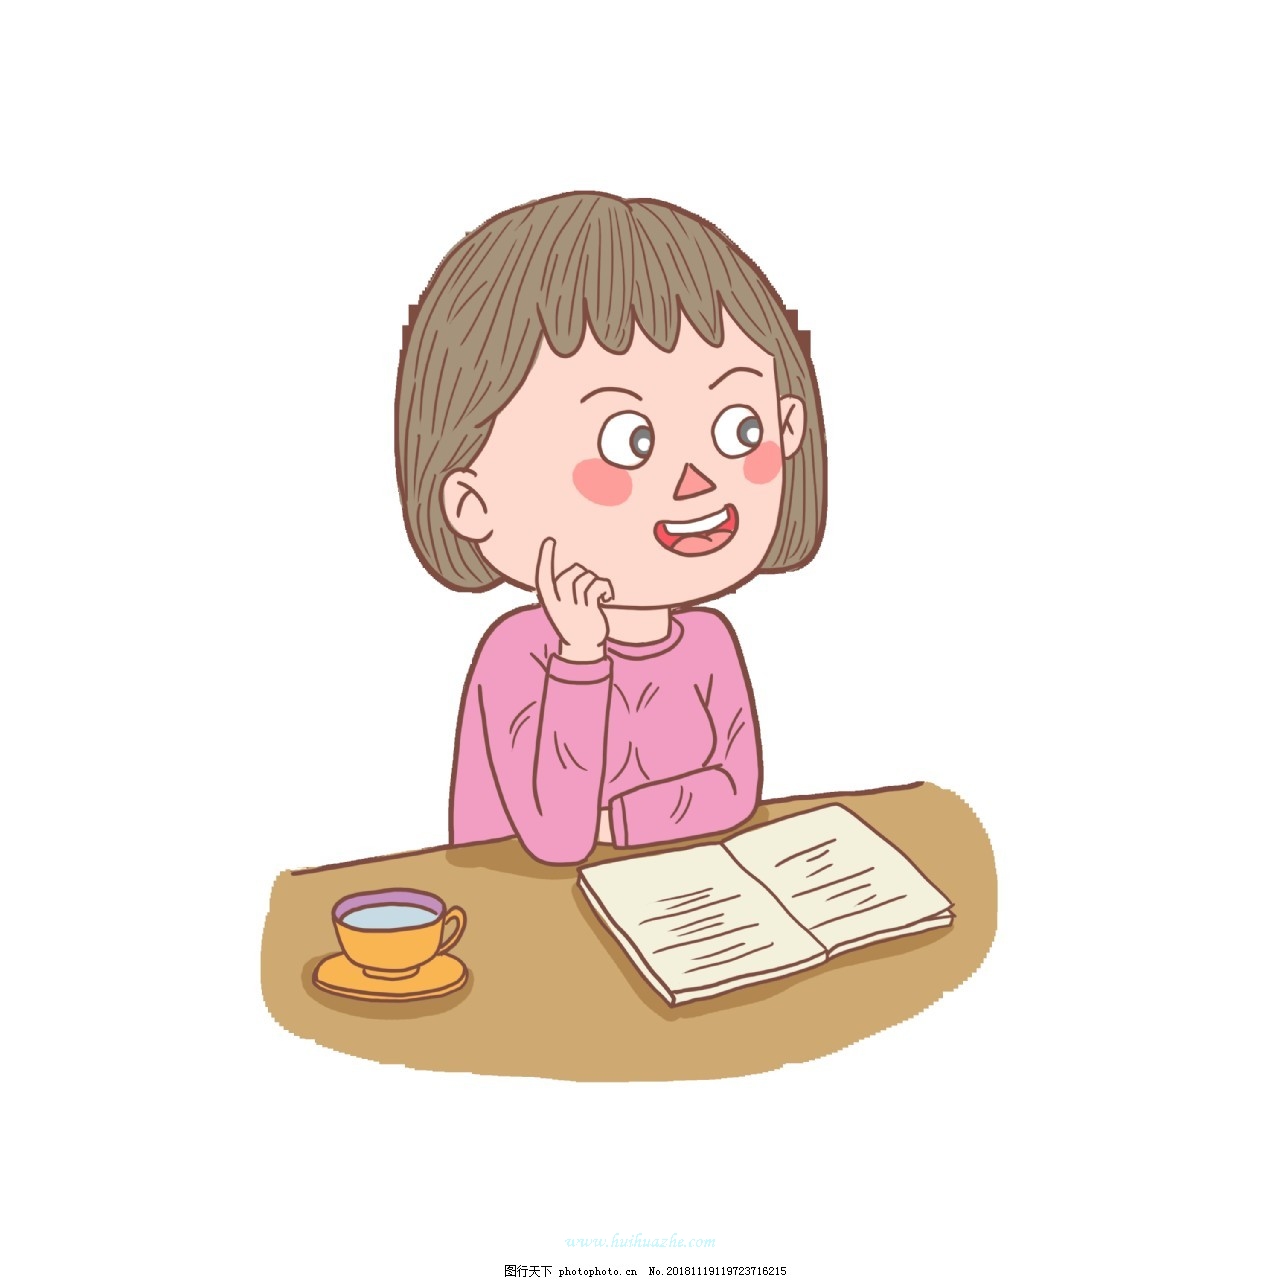 図書館で本を読んでいる女の子 イラスト素材 無料ダウンロード - Lovepik